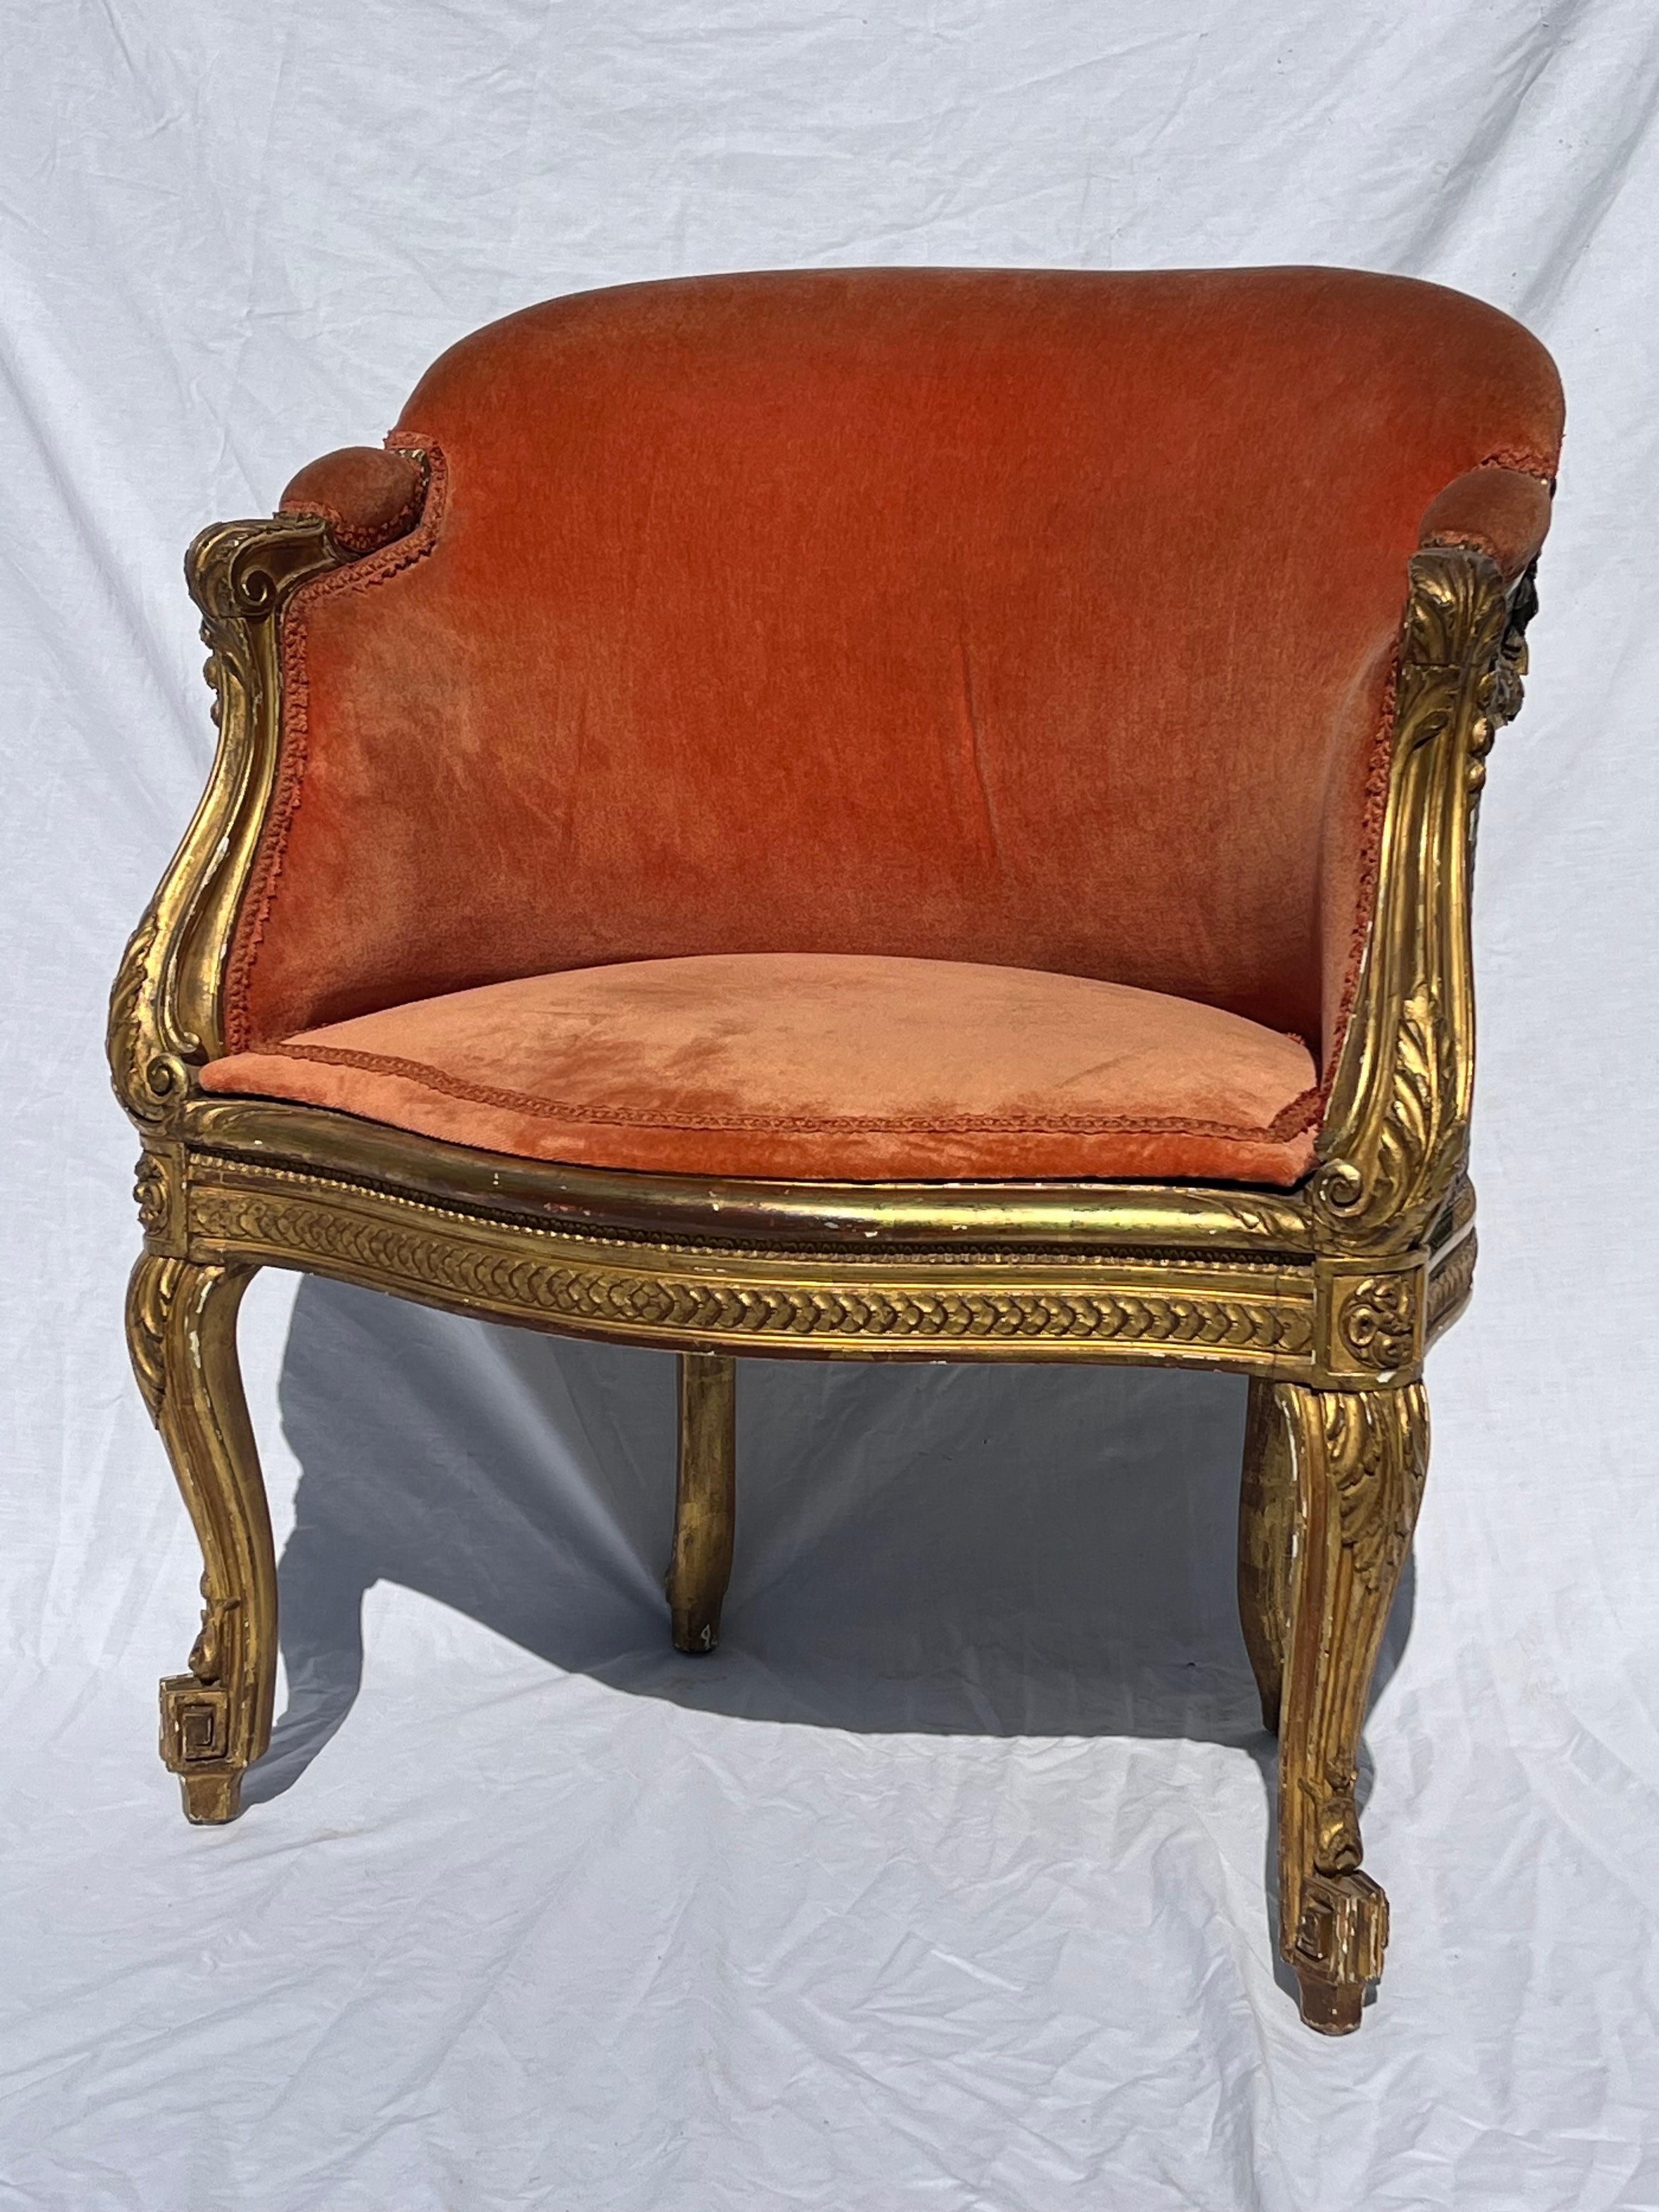 Français Antiquité française dorée et sculptée 19ème siècle Cane fauteuil Bergere tapissé en vente